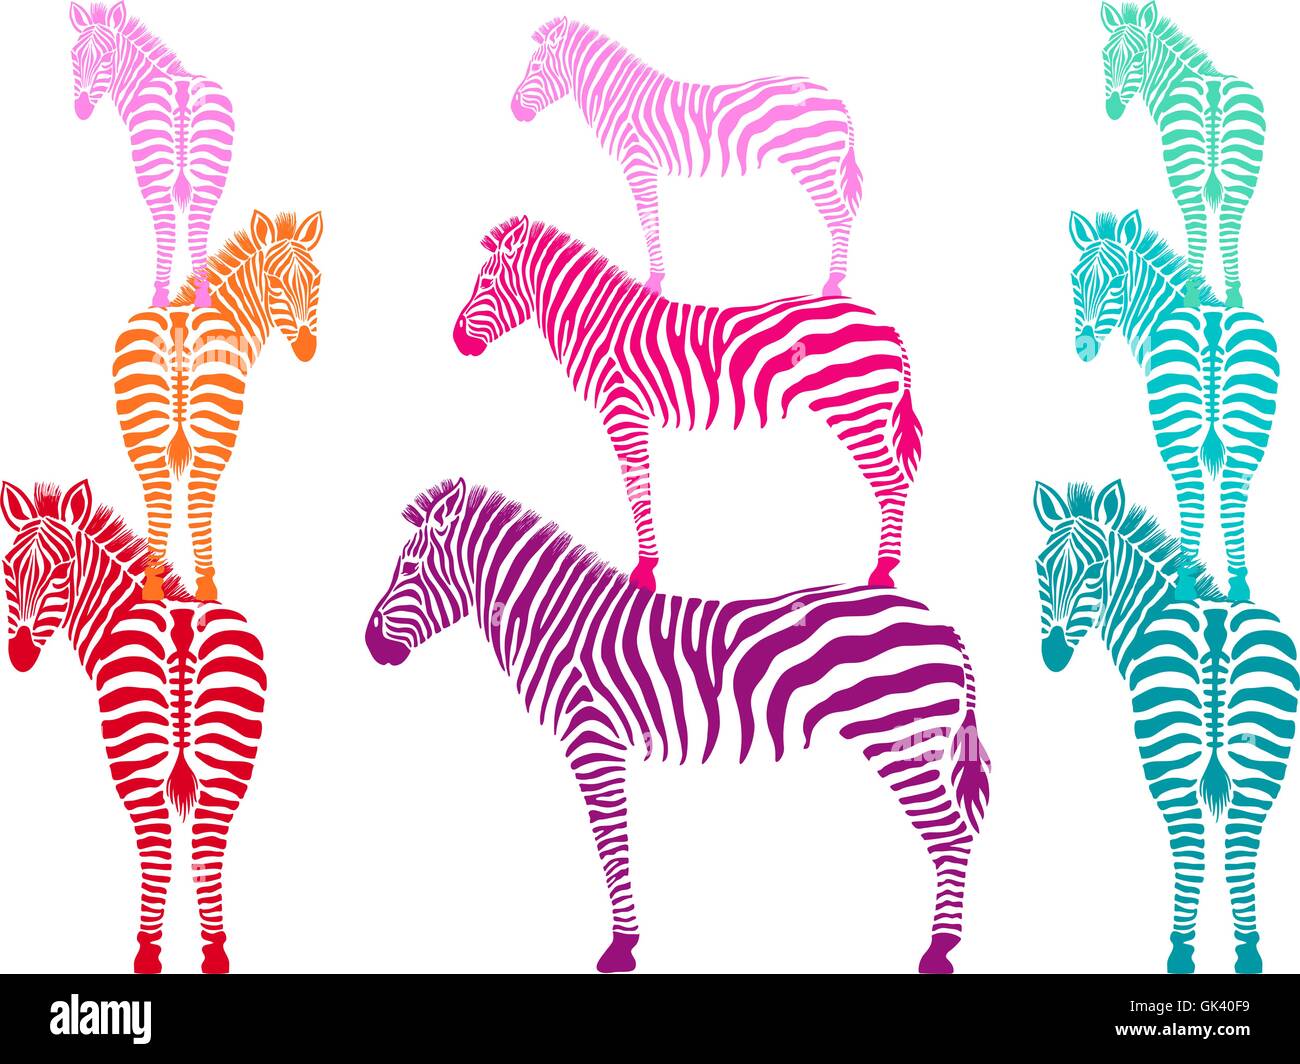 bunte Zebras stehend, Seiten- und Rückansicht, Vektor-illustration Stock Vektor